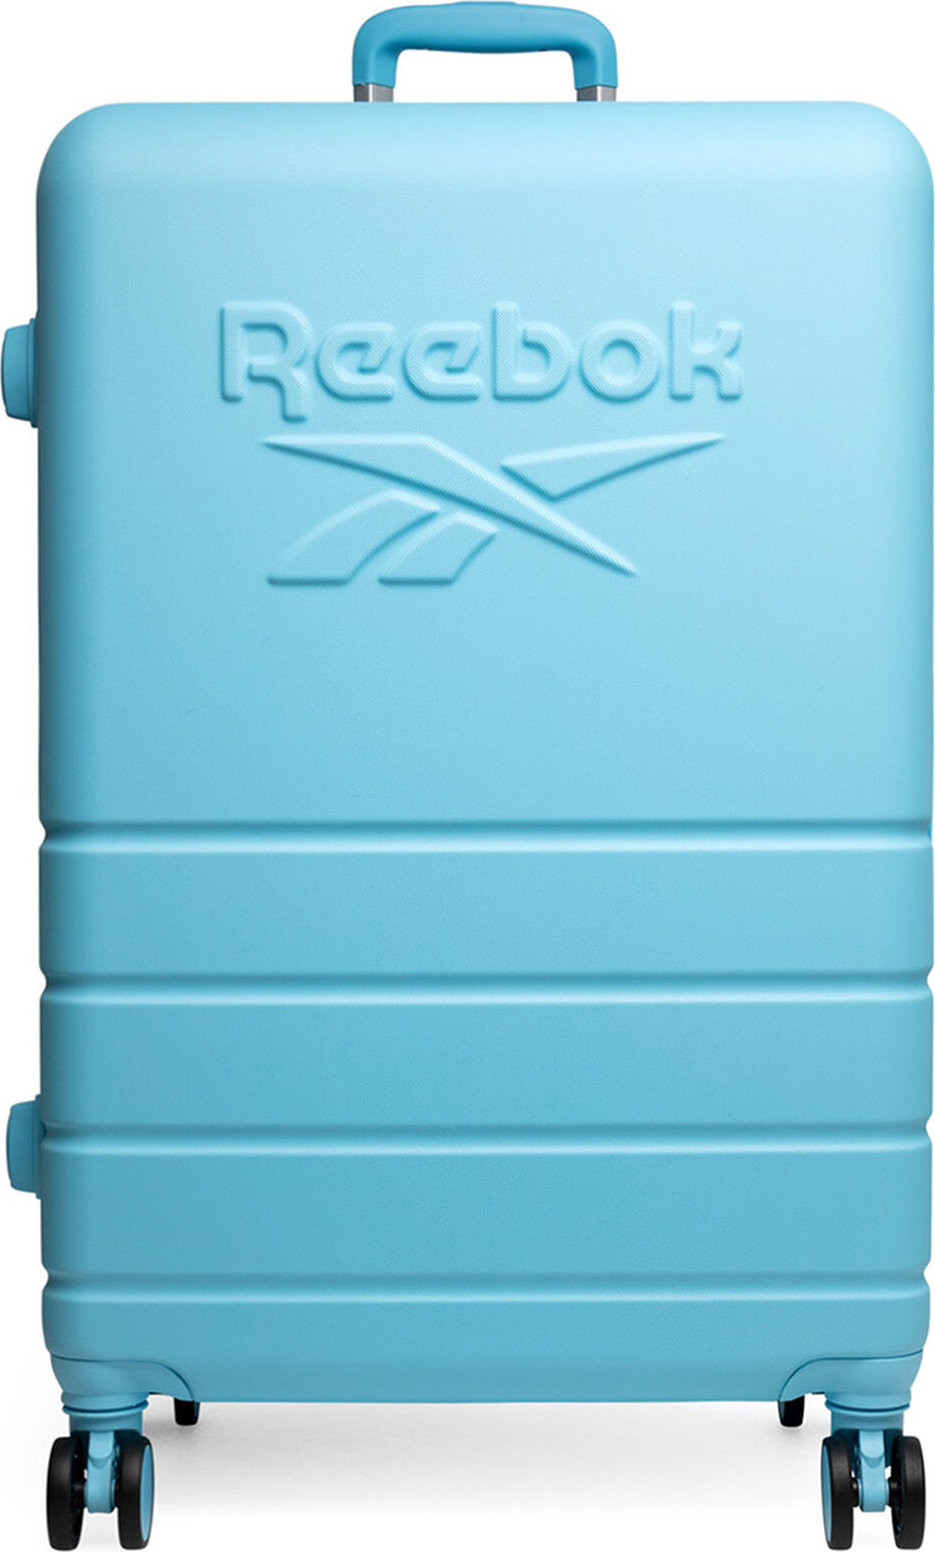 Velký tvrdý kufr Reebok RBK-WAL-012-CCC-L Světle modrá